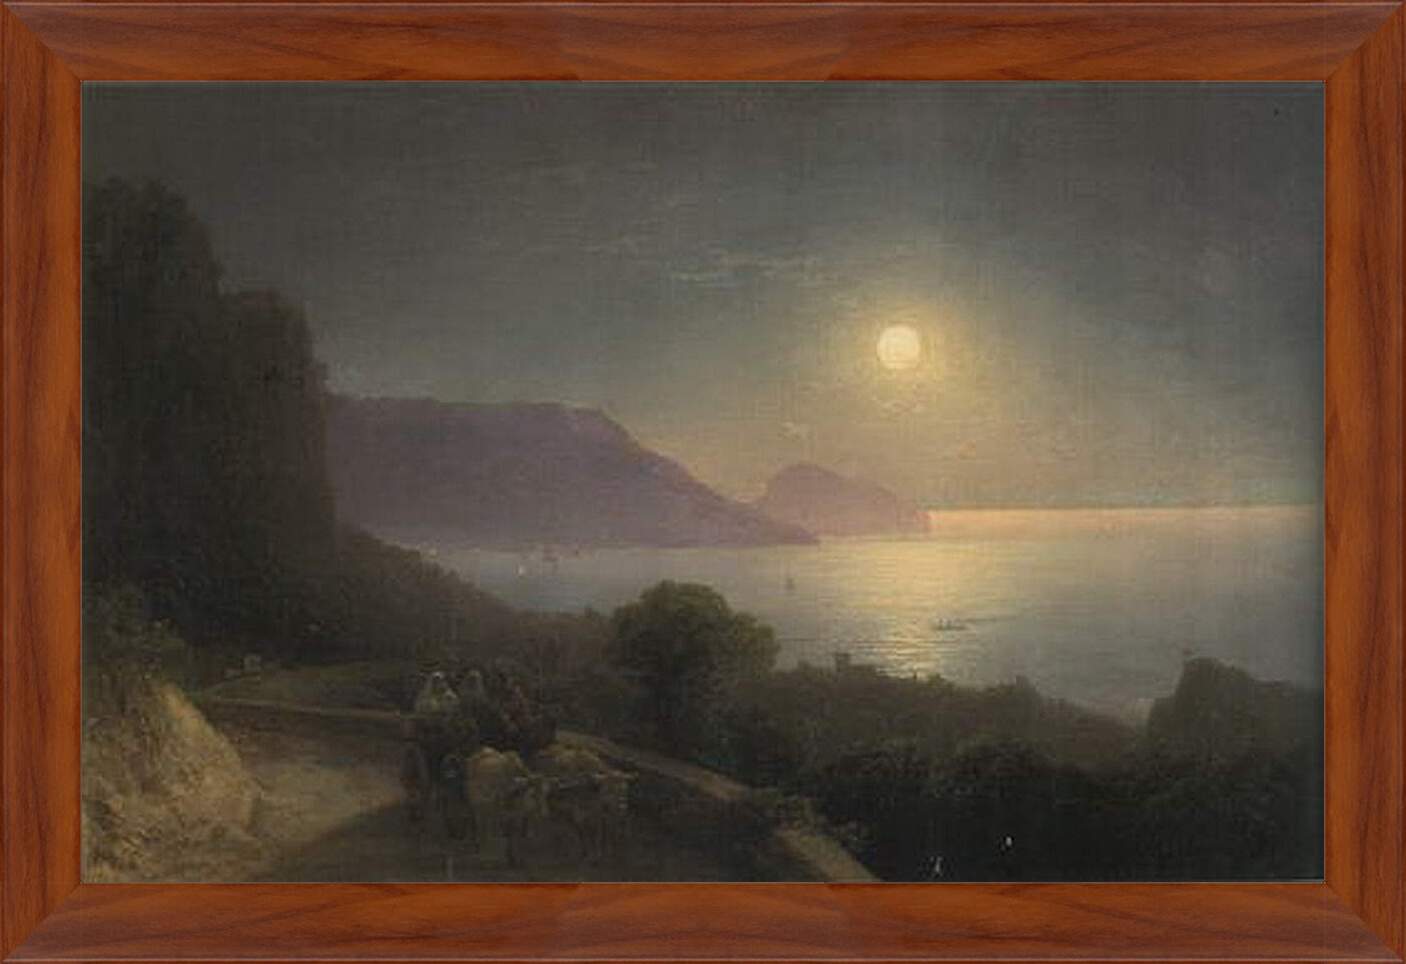 Картина в раме - Вид Крыма в лунную ночь. Иван Айвазовский
